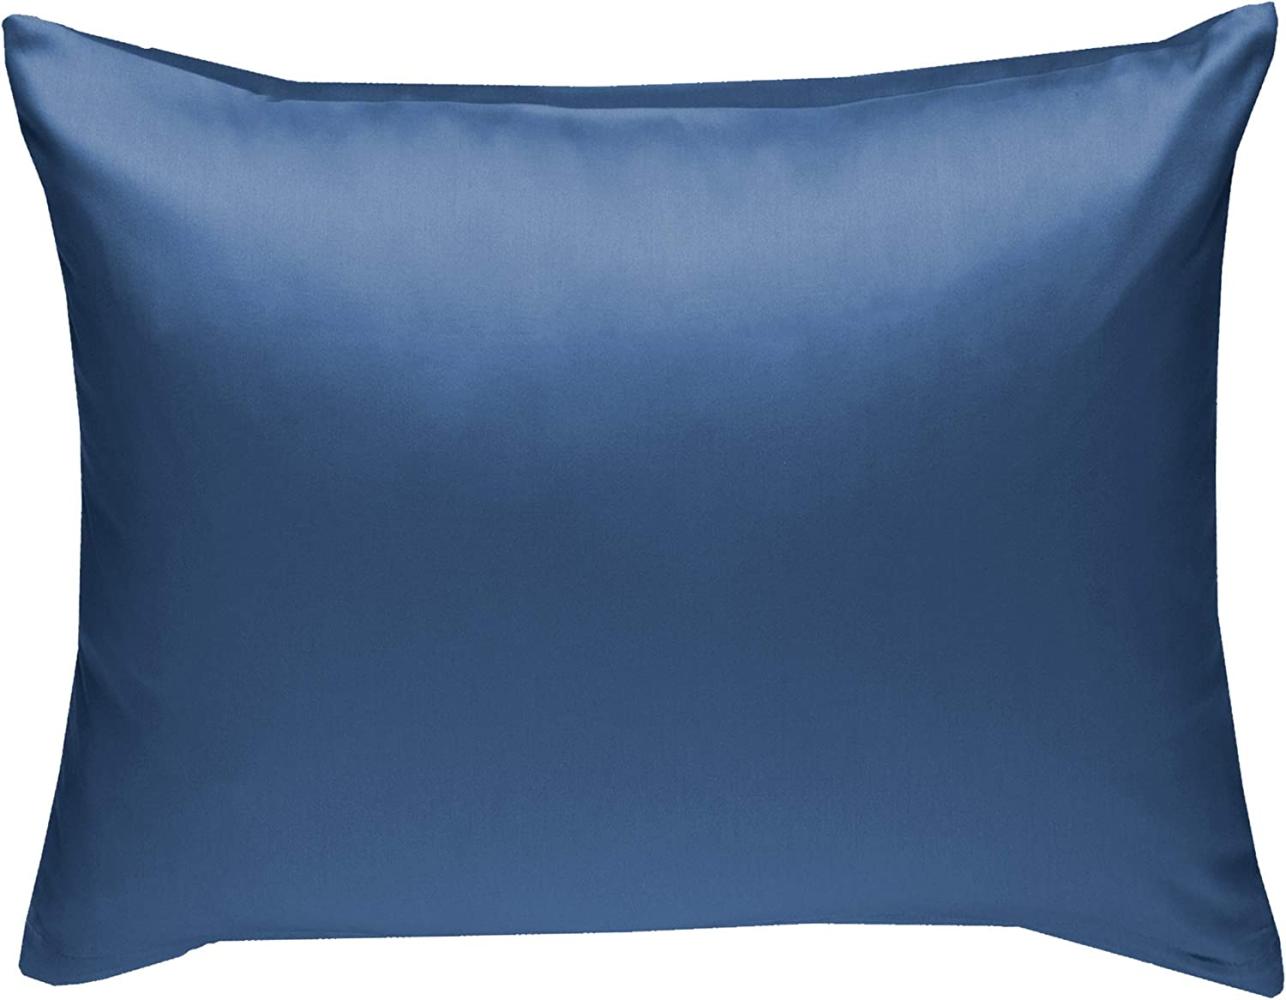 Bettwaesche-mit-Stil Mako-Satin / Baumwollsatin Bettwäsche uni / einfarbig Jeans Blau Kissenbezug 70x90 cm Bild 1